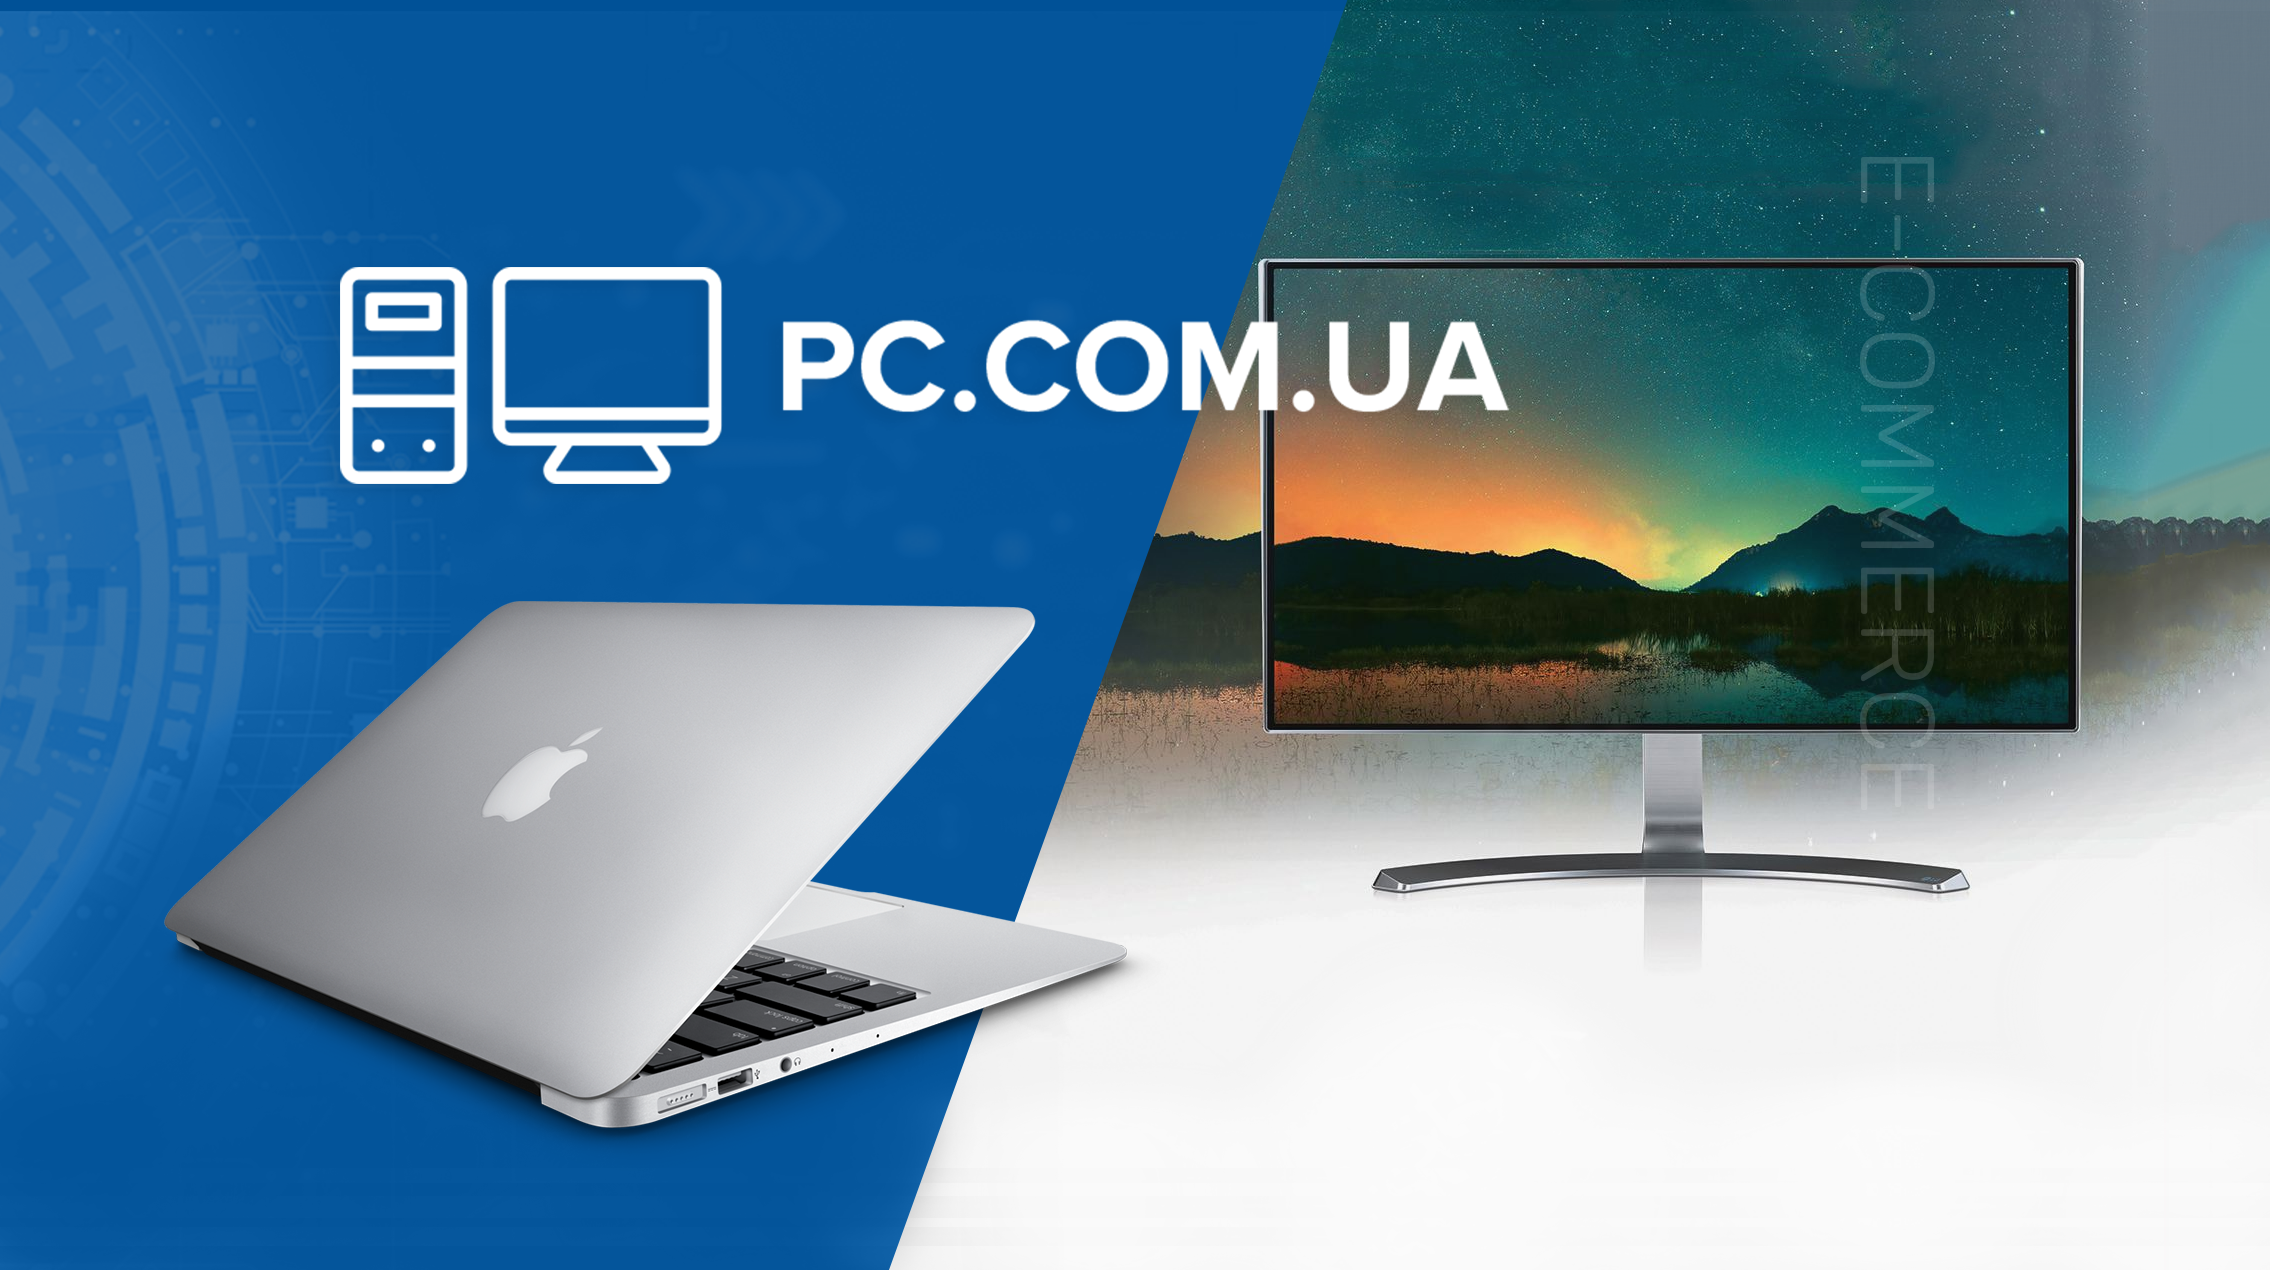 Создание интернет-магазина компьютерной техники PC.com.ua